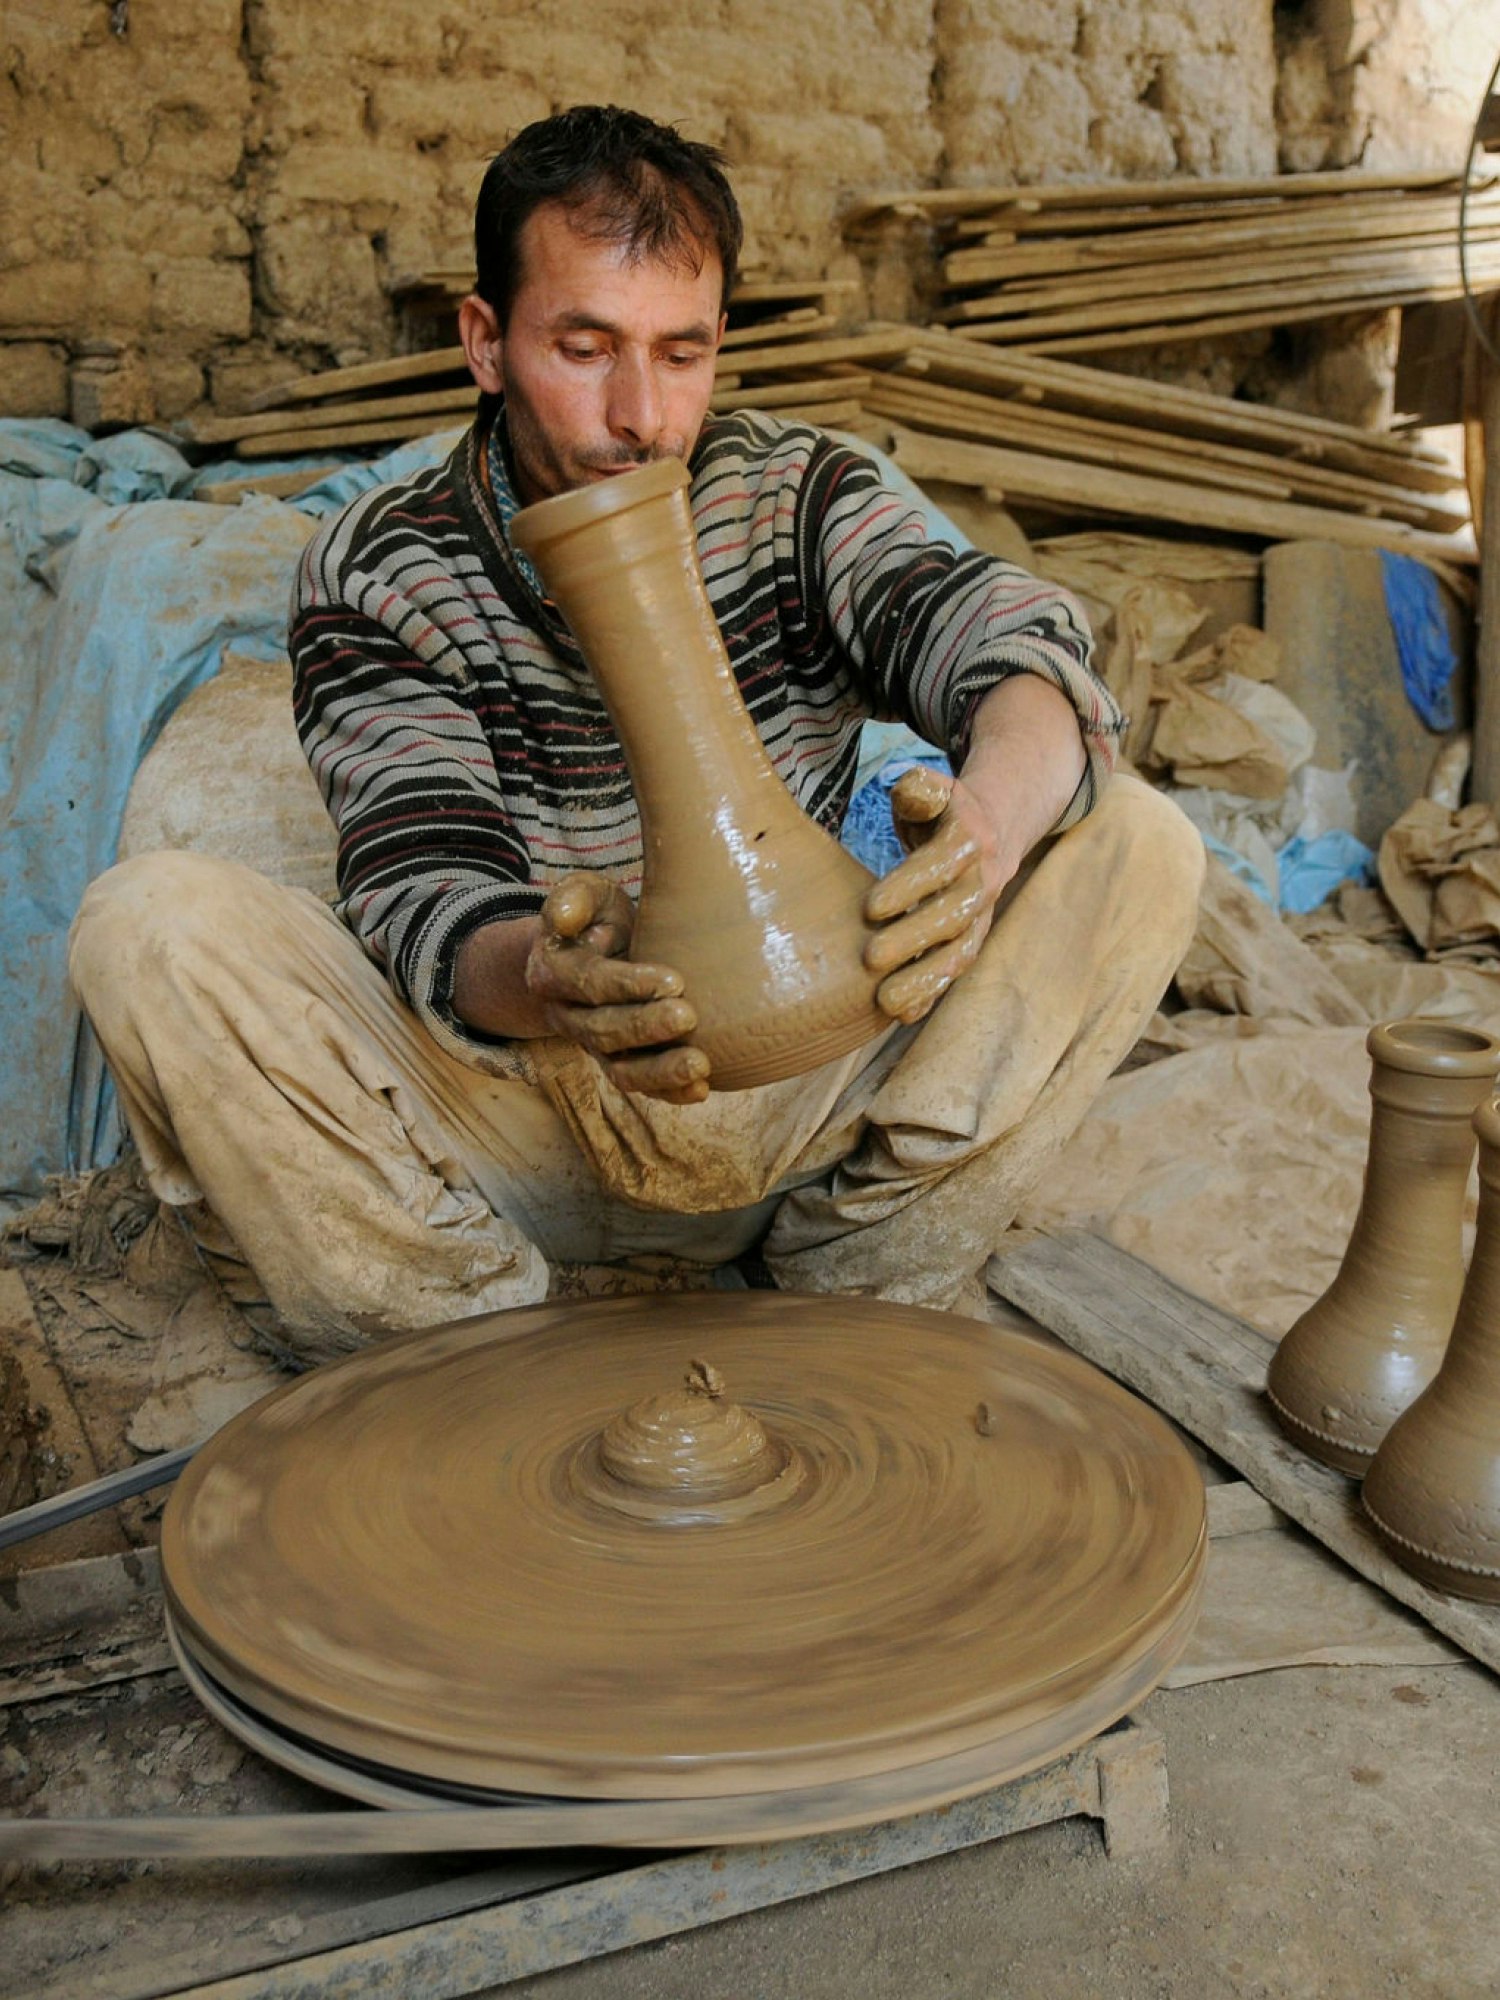 A photograph of a man making a pot.